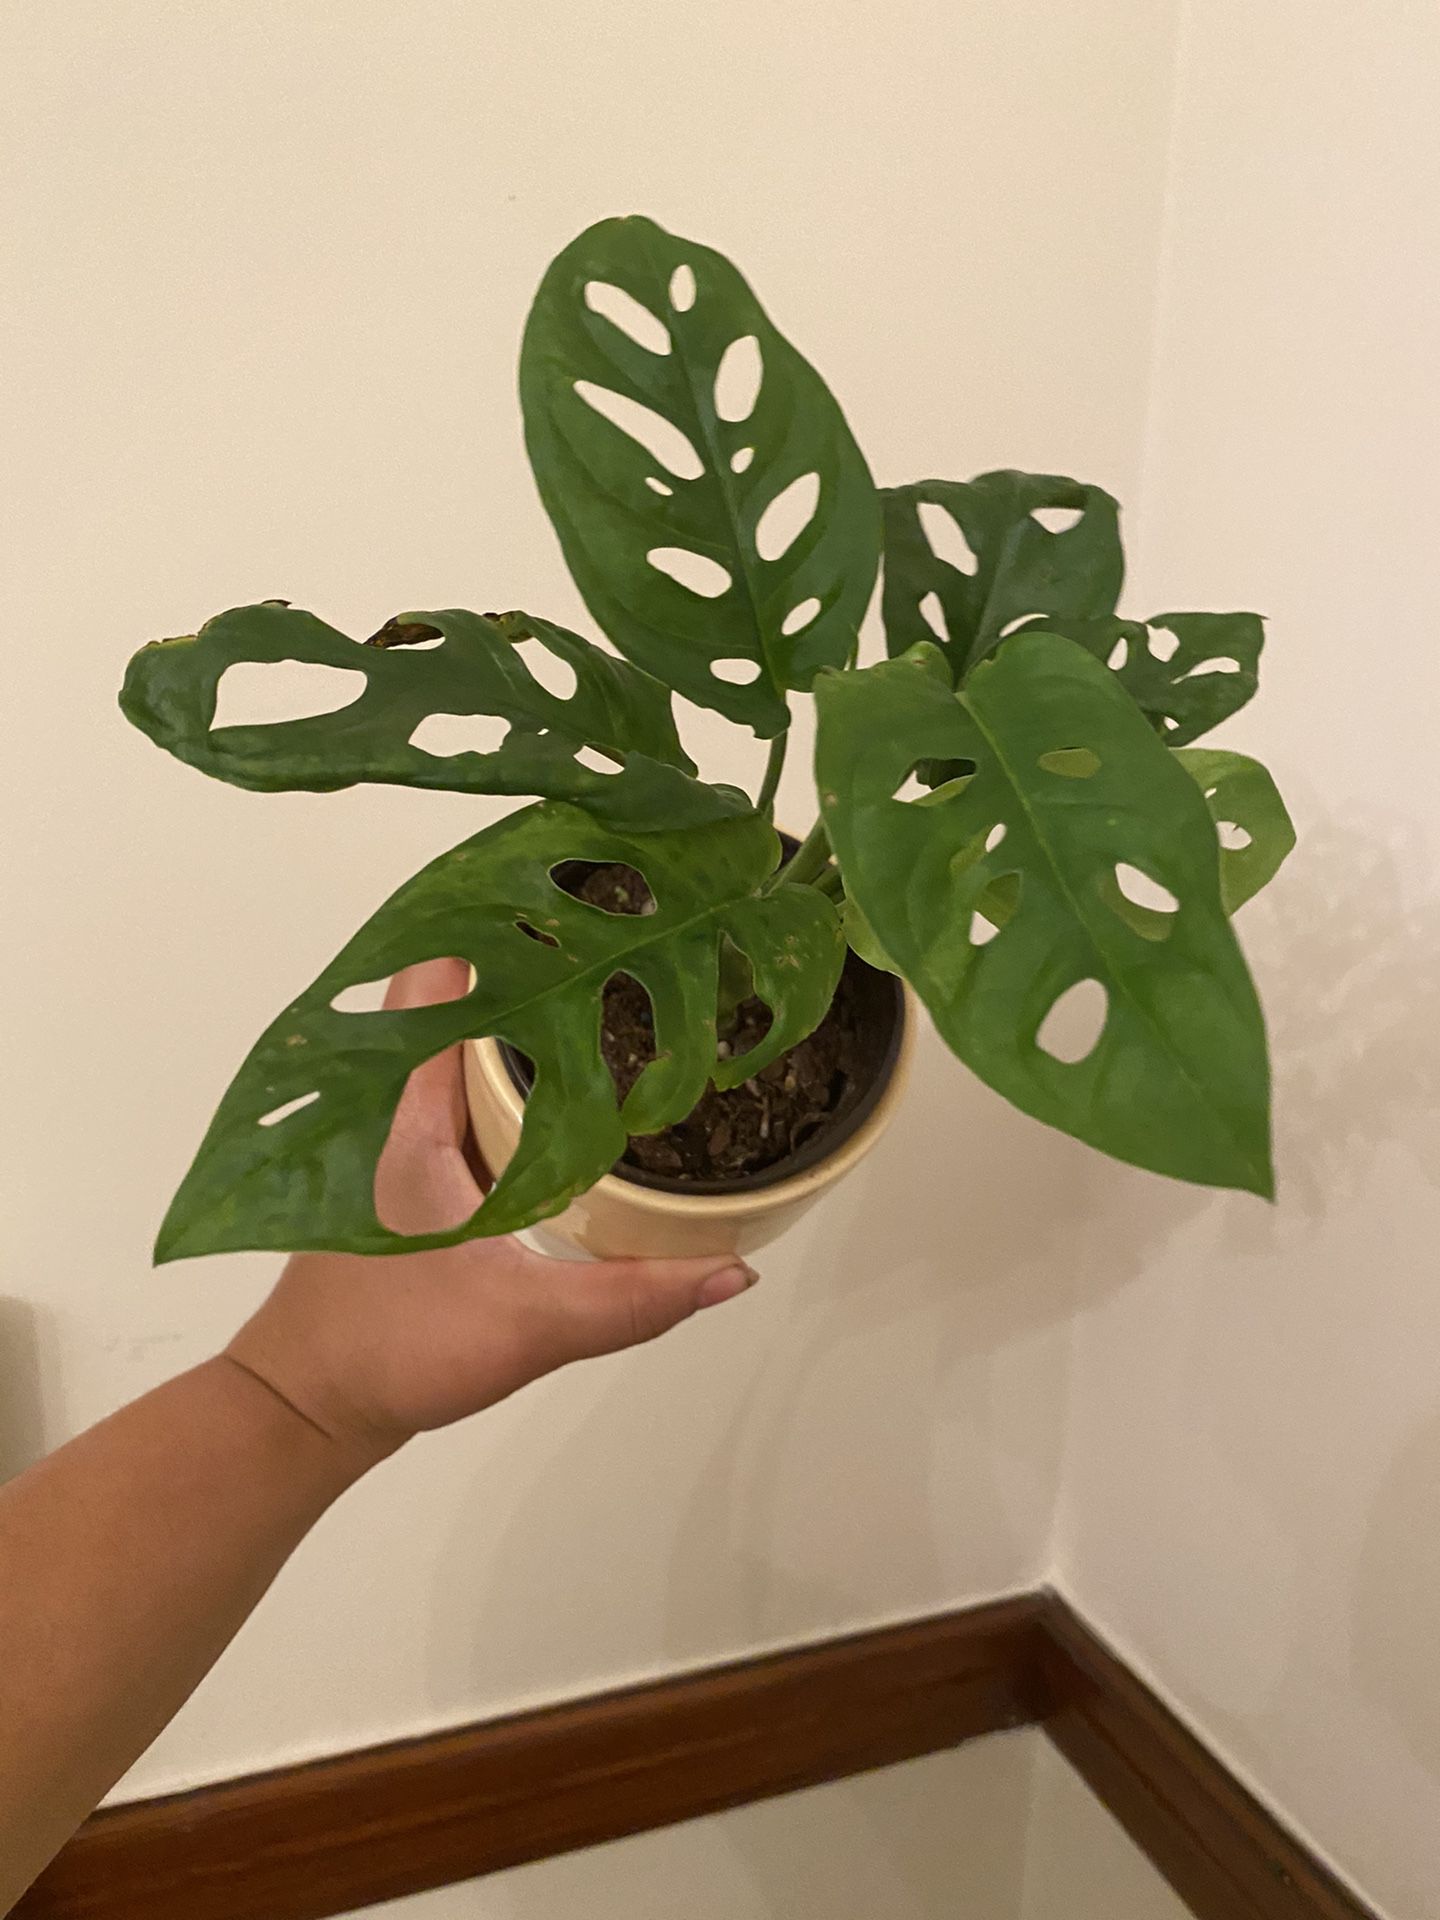 Beautiful monstera adansonii plant in ceramic planter